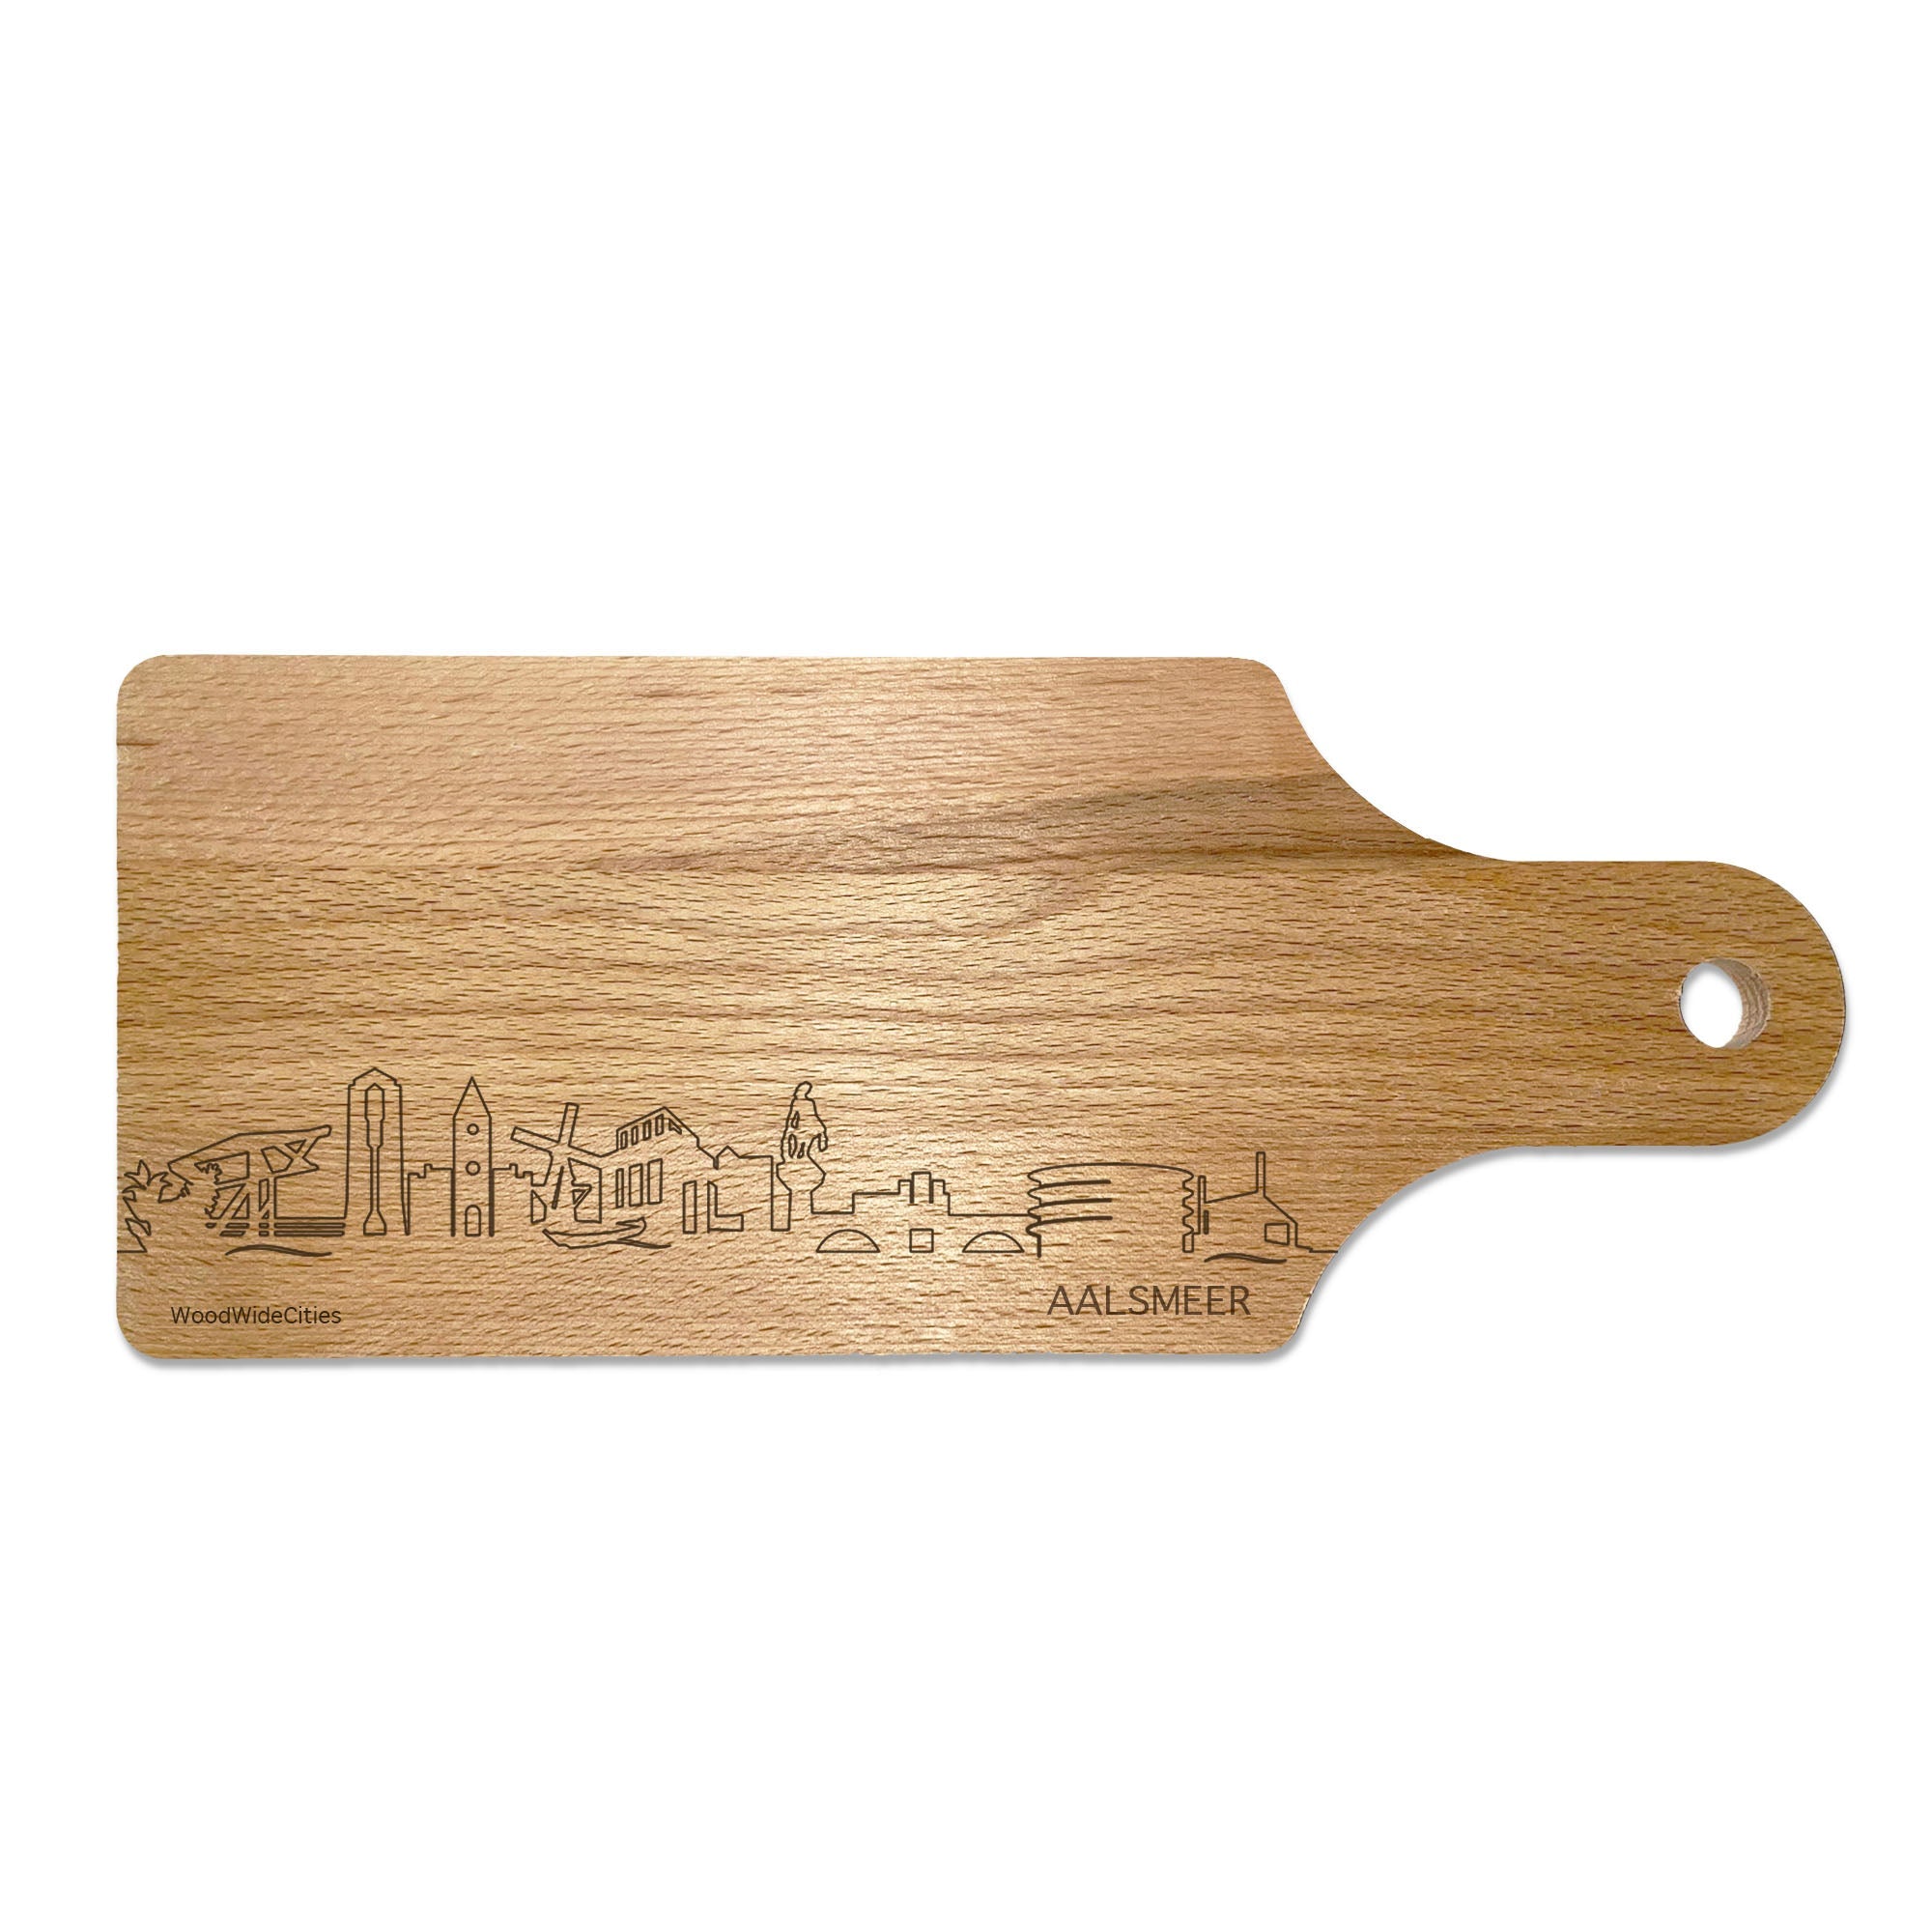 Skyline Borrelplank Aalsmeer houten cadeau decoratie relatiegeschenk van WoodWideCities